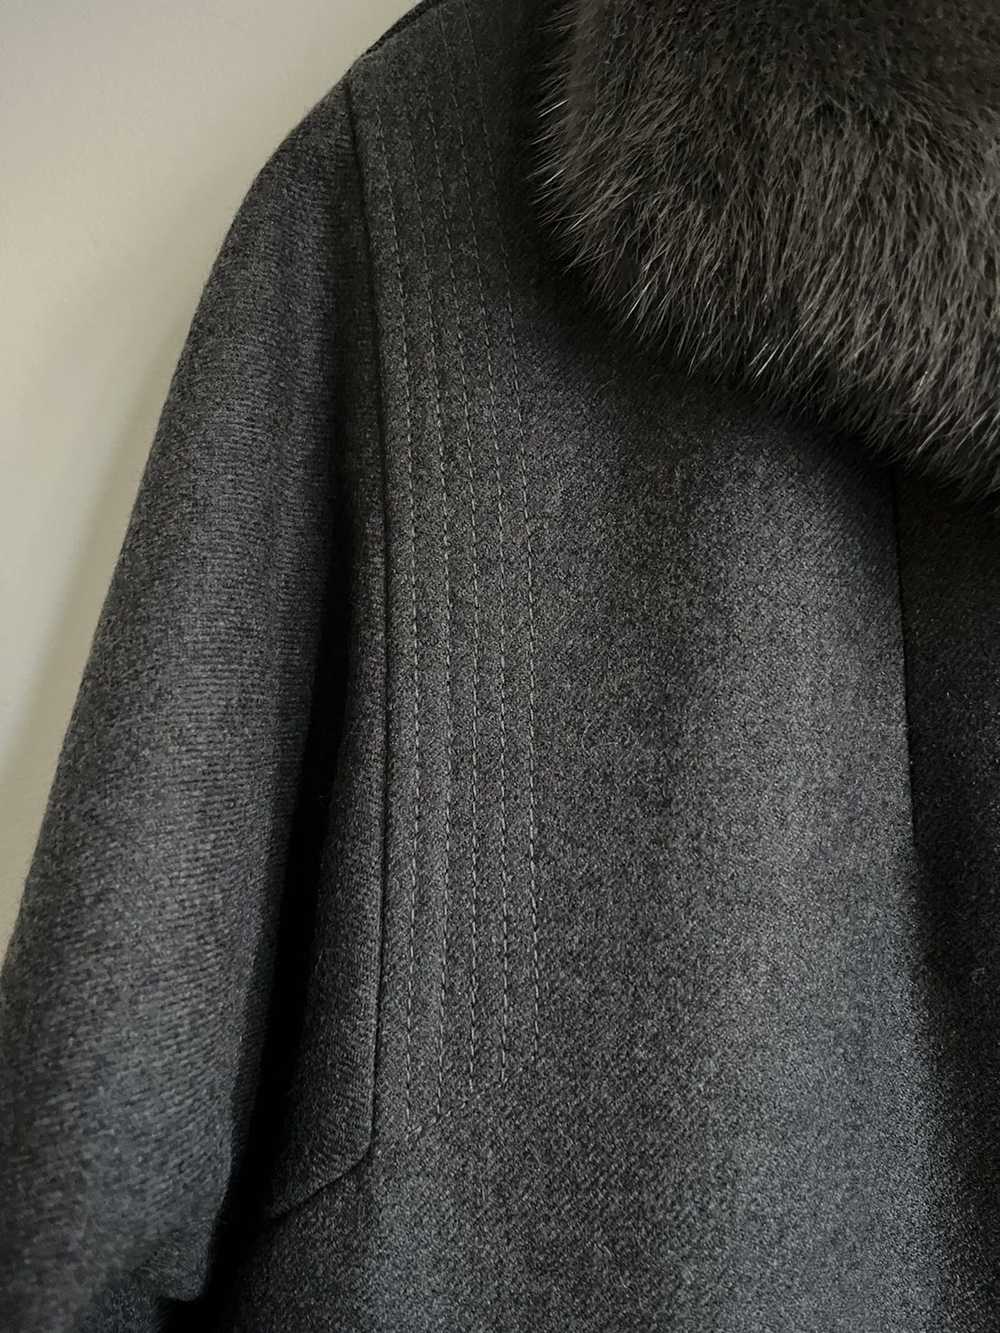 Cashmere & Wool × Mink Fur Coat × Vintage Vintage… - image 6